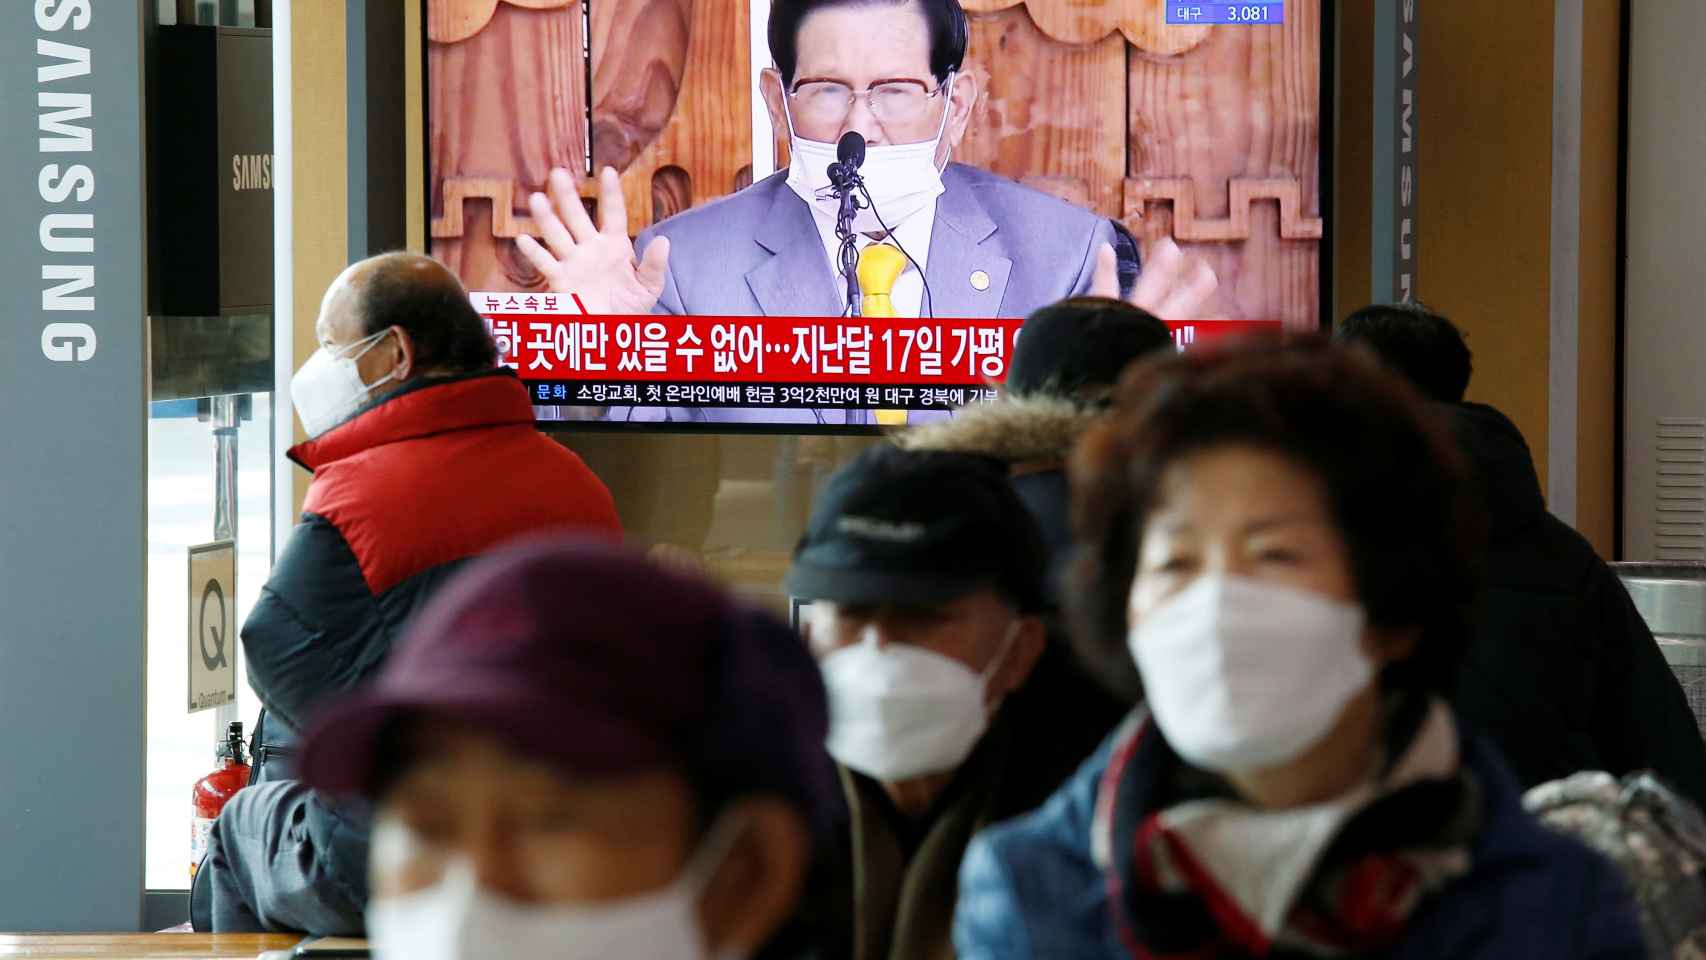 El presidente coreano en una intervención tras la detección del coronavirus.